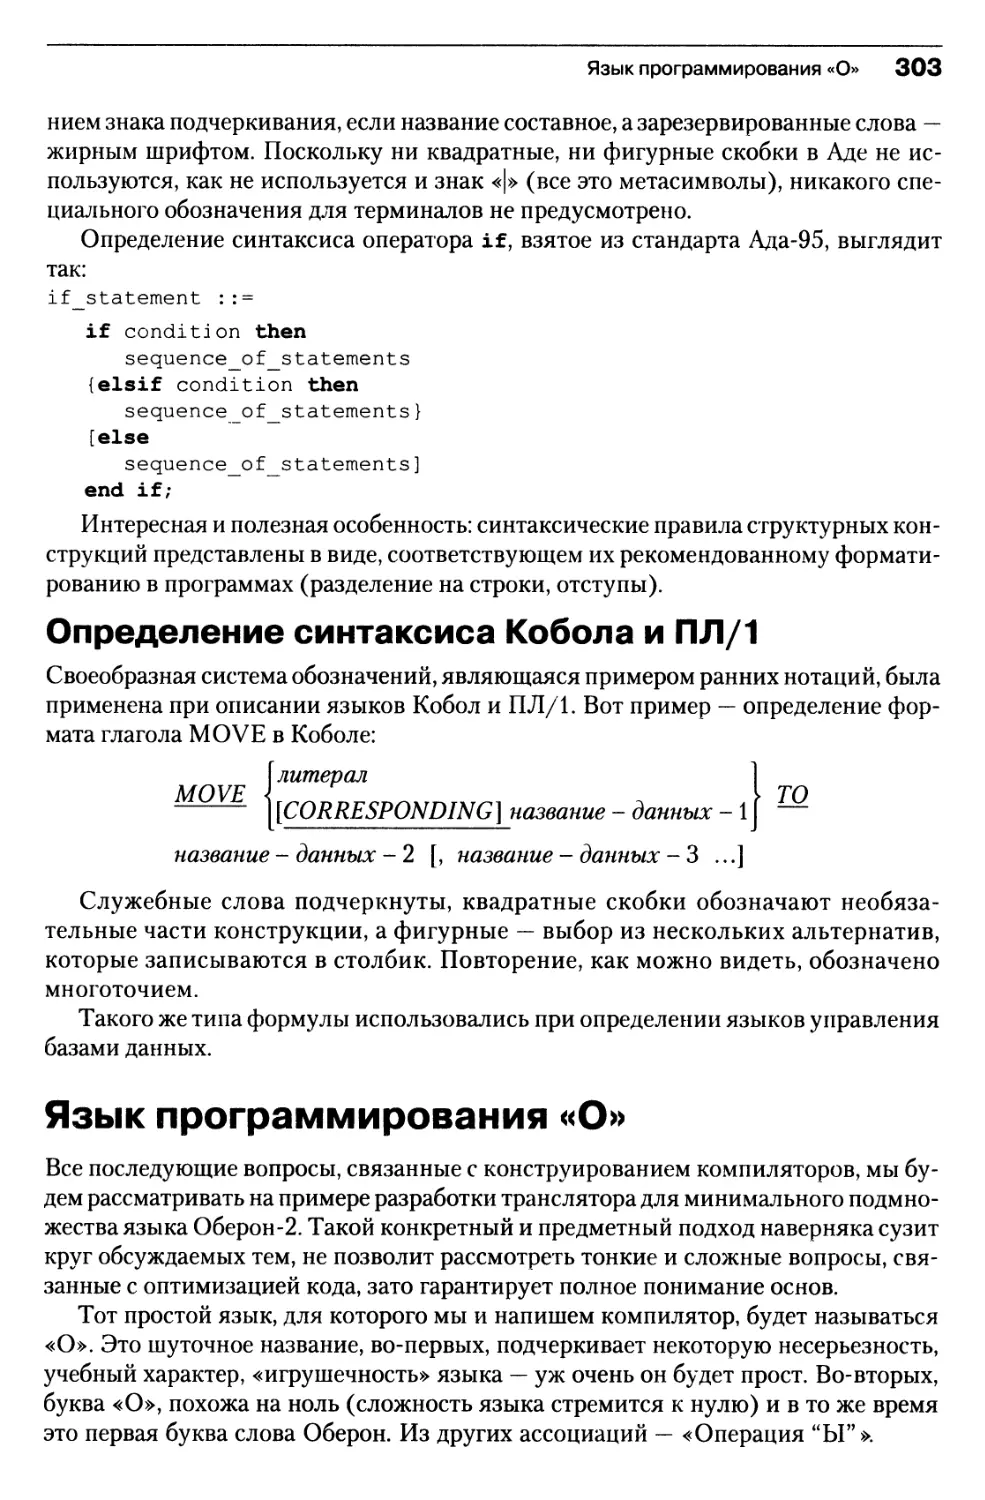 Определение синтаксиса Кобола и ПЛ/1
Язык программирования «О»